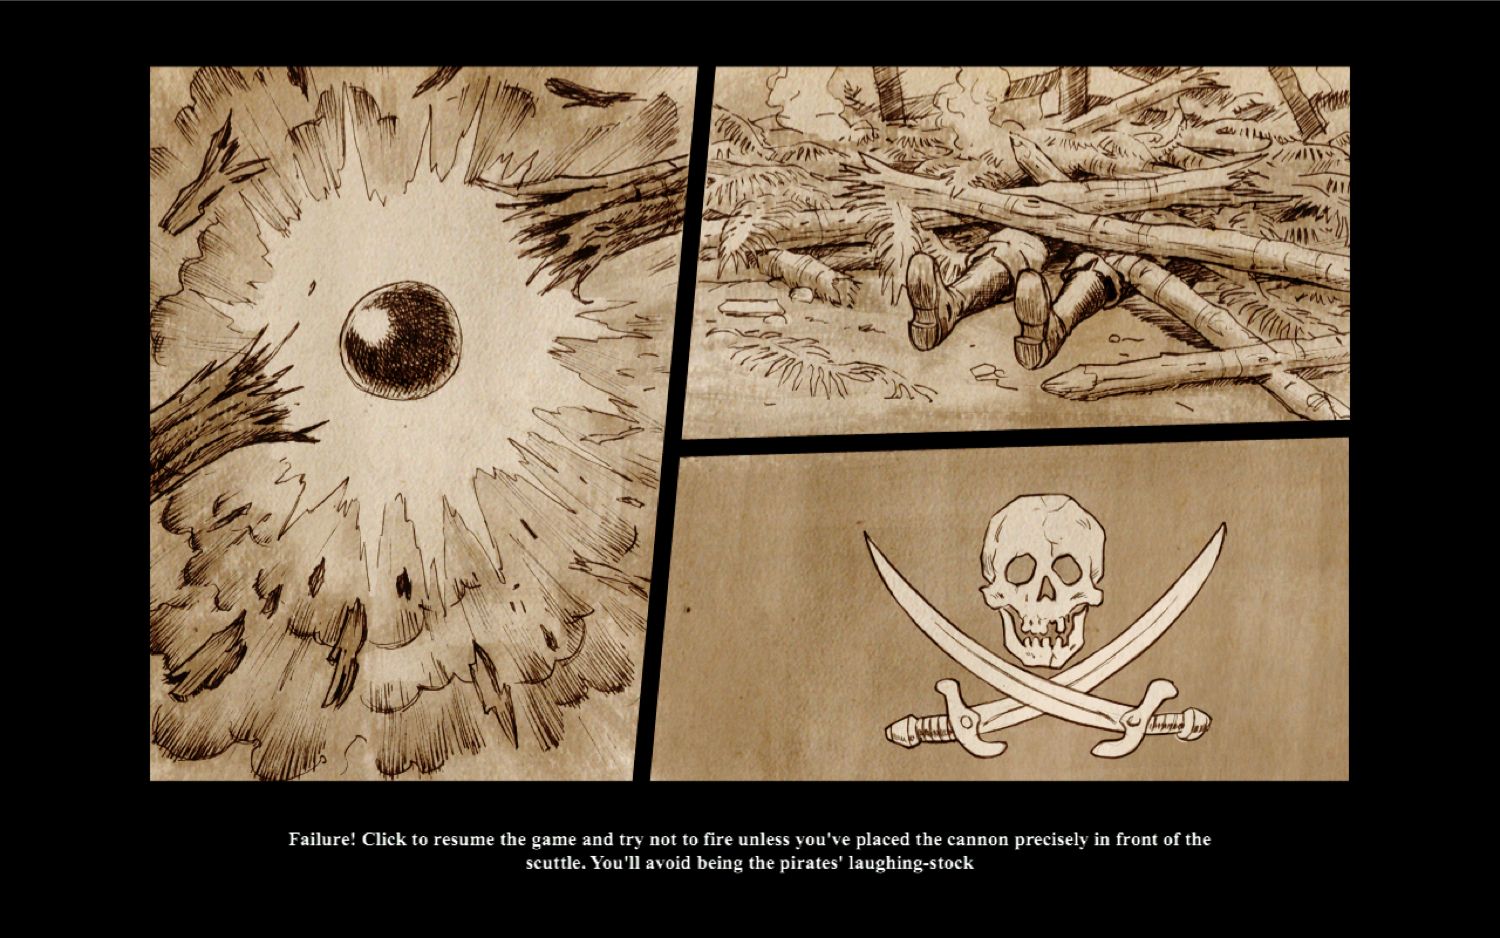 Destination: Treasure Island 1.5 : Comic-style cutscene